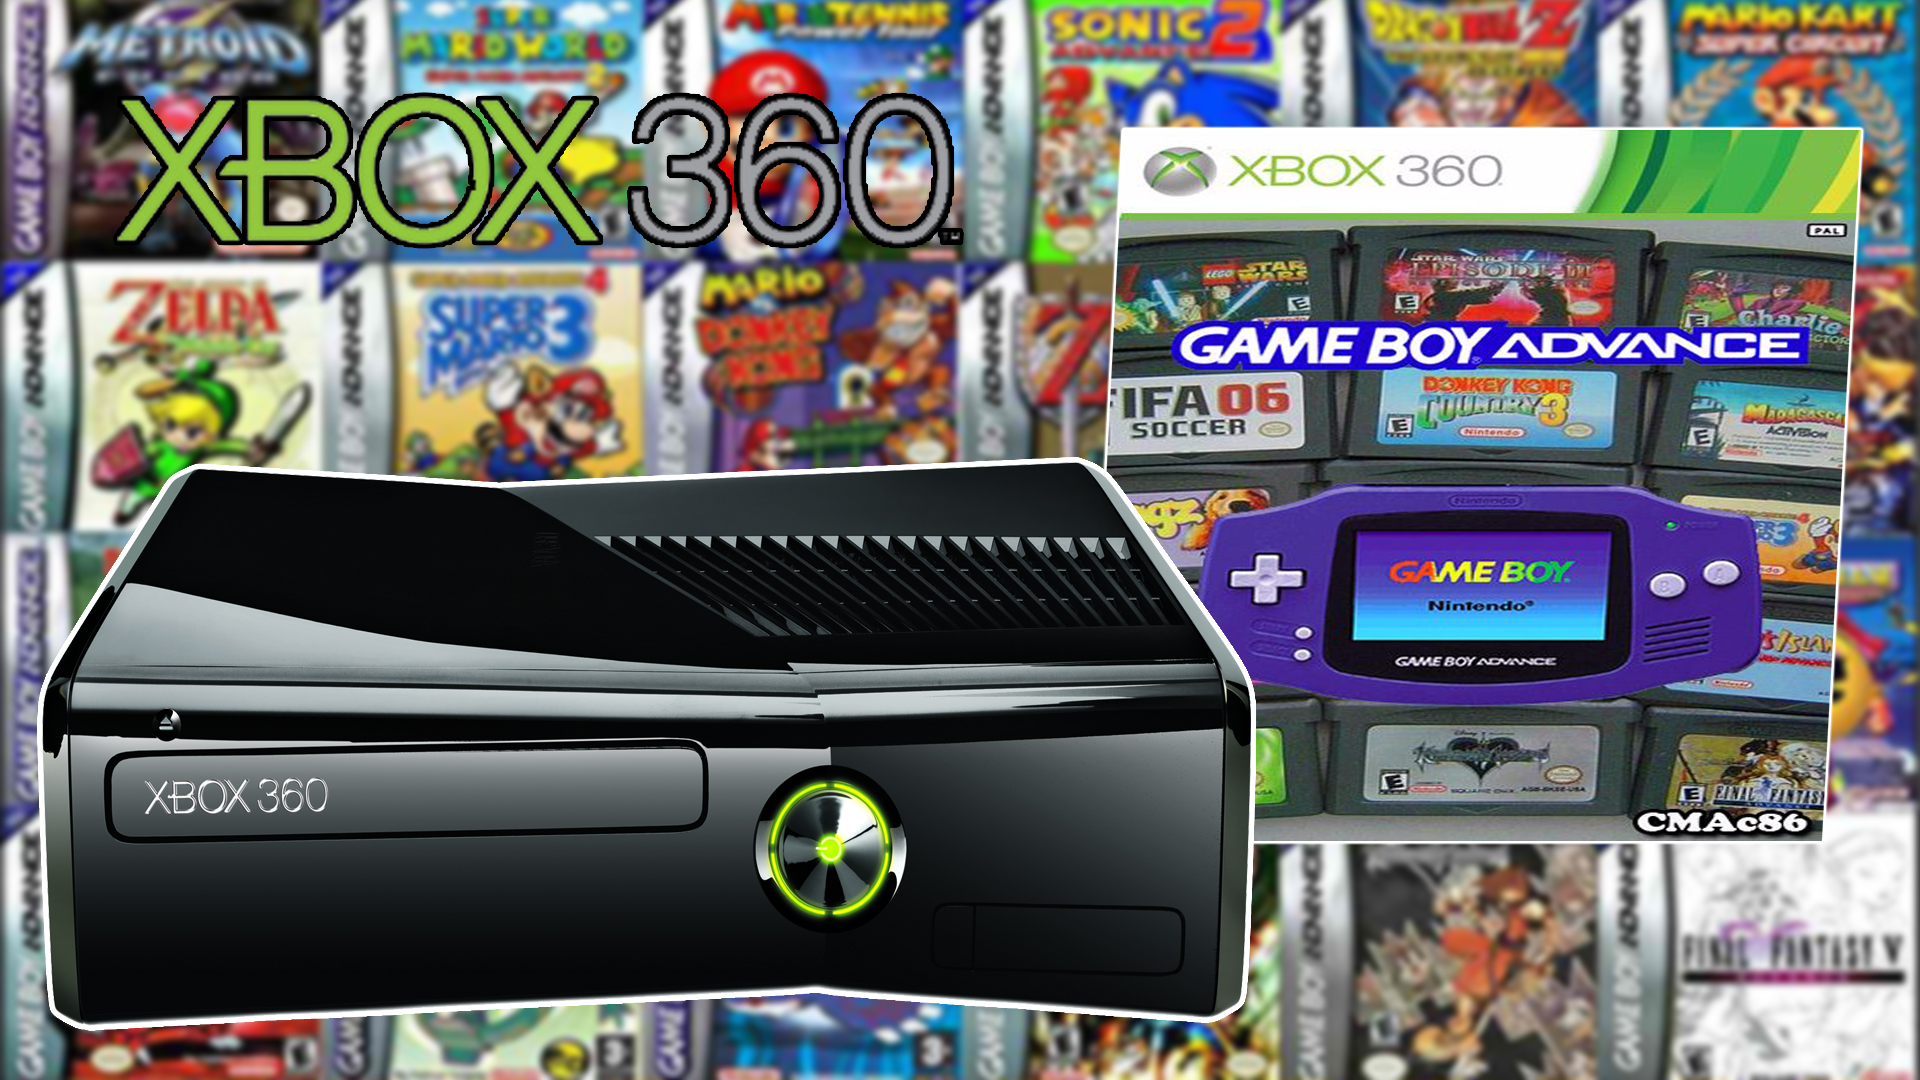 VIDEOGAMES SCZ on X: EMULADOR GAME BOY ADVANCE PARA XBOX 360 RGH + JUEGOS  LINK GOOGLE DRIVE  LINK MEDIAFIRE  VÍDEO     / X